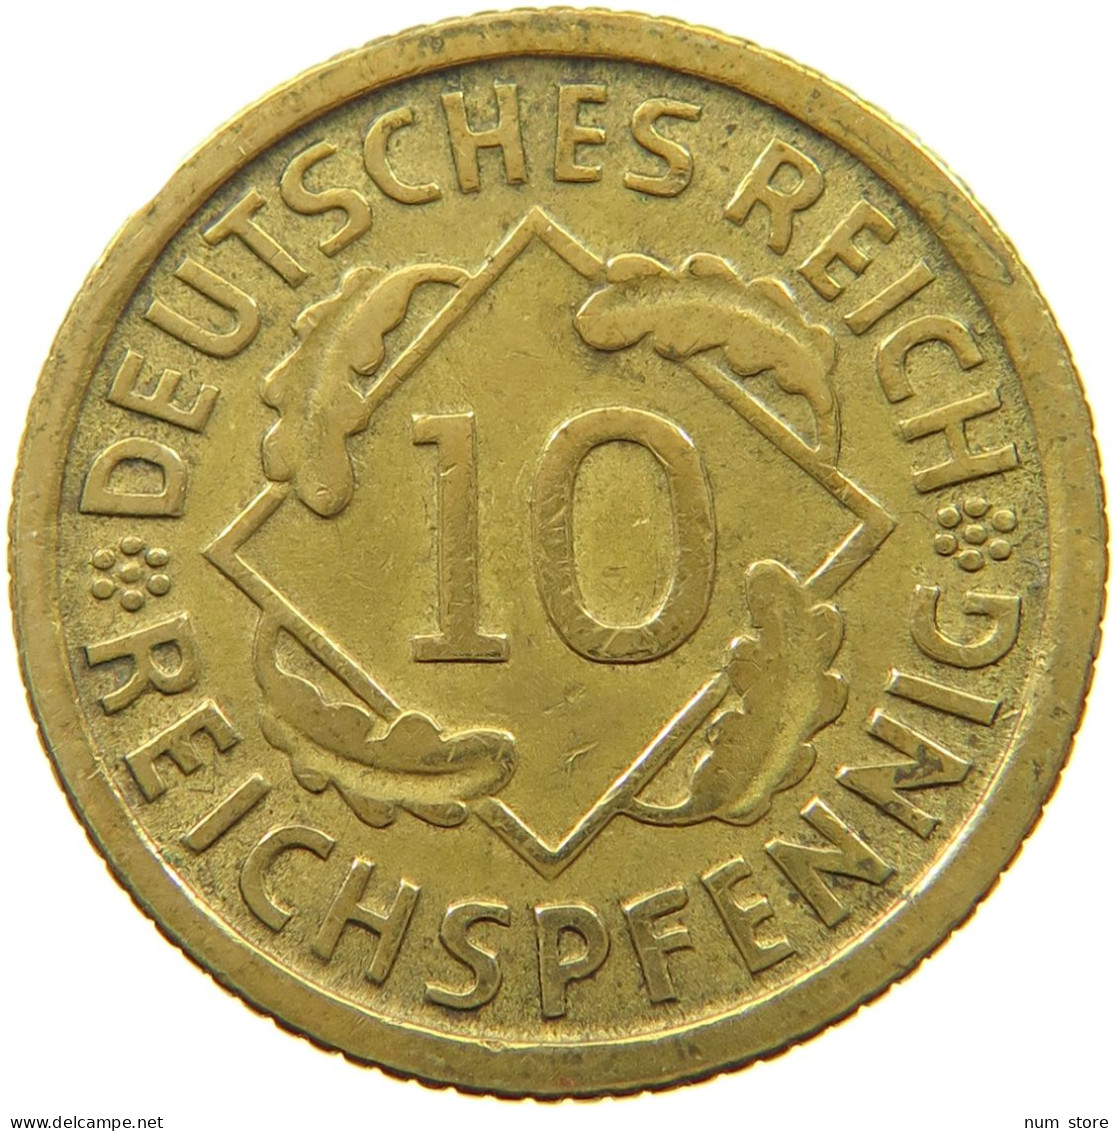 WEIMARER REPUBLIC 10 PFENNIG 1931 D 10 REICHSPFENNIG #MA 003488 - 10 Renten- & 10 Reichspfennig